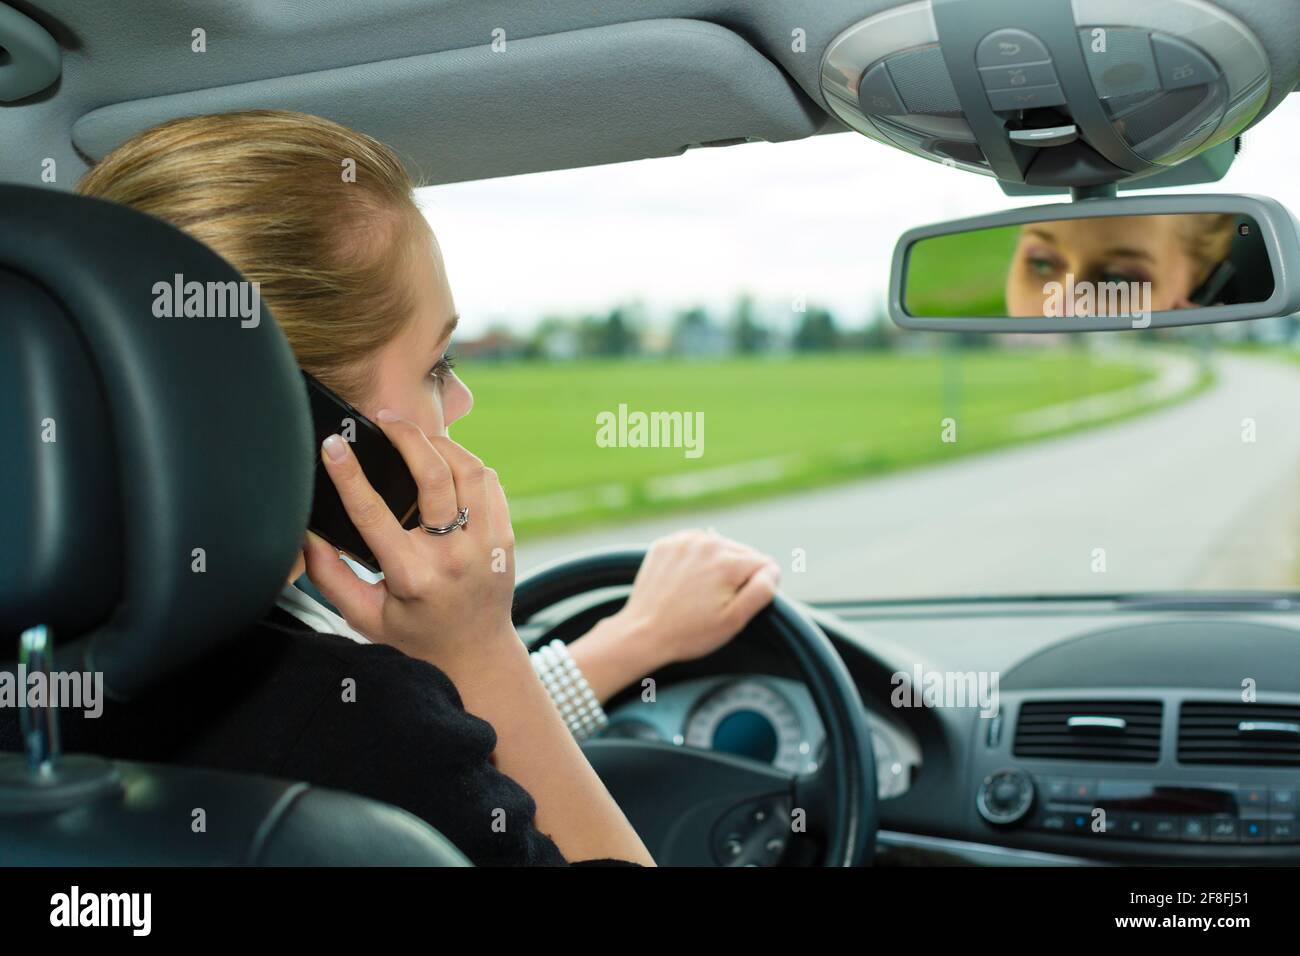 Едет навестить. Женщина за рулем с телефоном. Девушка в машине с телефоном. Человек в машине с телефоном. Человек говорит по телефону в машине.